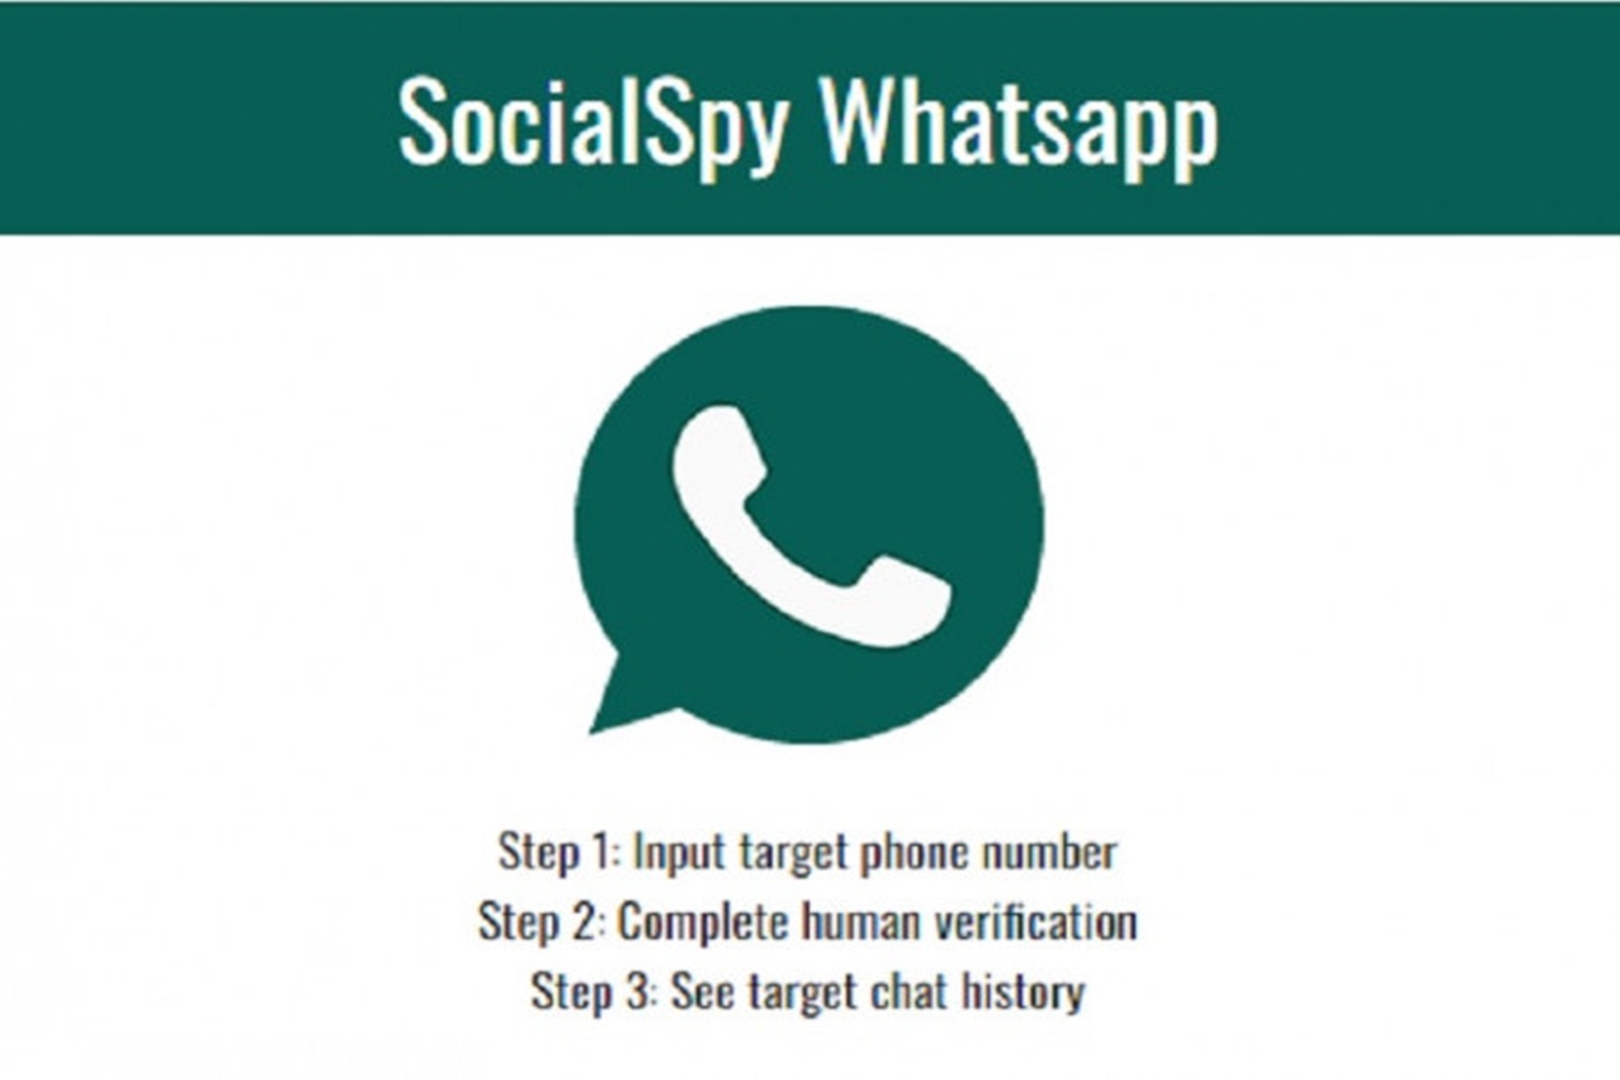 Cara Bongkar Chat Pacar dengan Social Spy Whatsapp, Berhasil Log In Tanpa Ketauan!